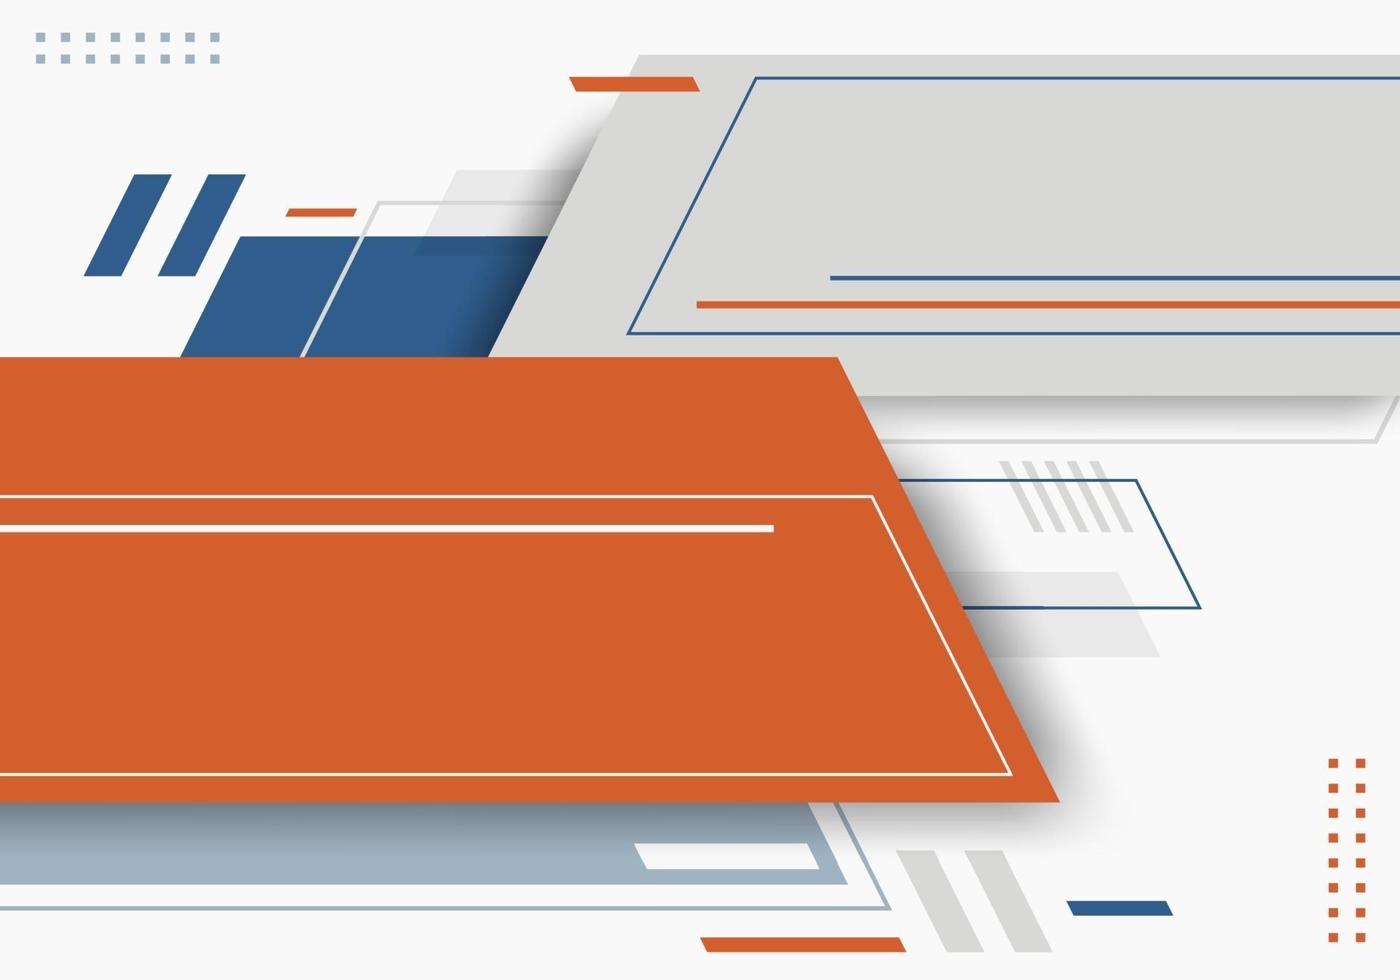 abstracte blauwe, grijze, oranje kleur geometrisch met lijnen horizontaal op witte achtergrondtechnologie futuristische stijl vector